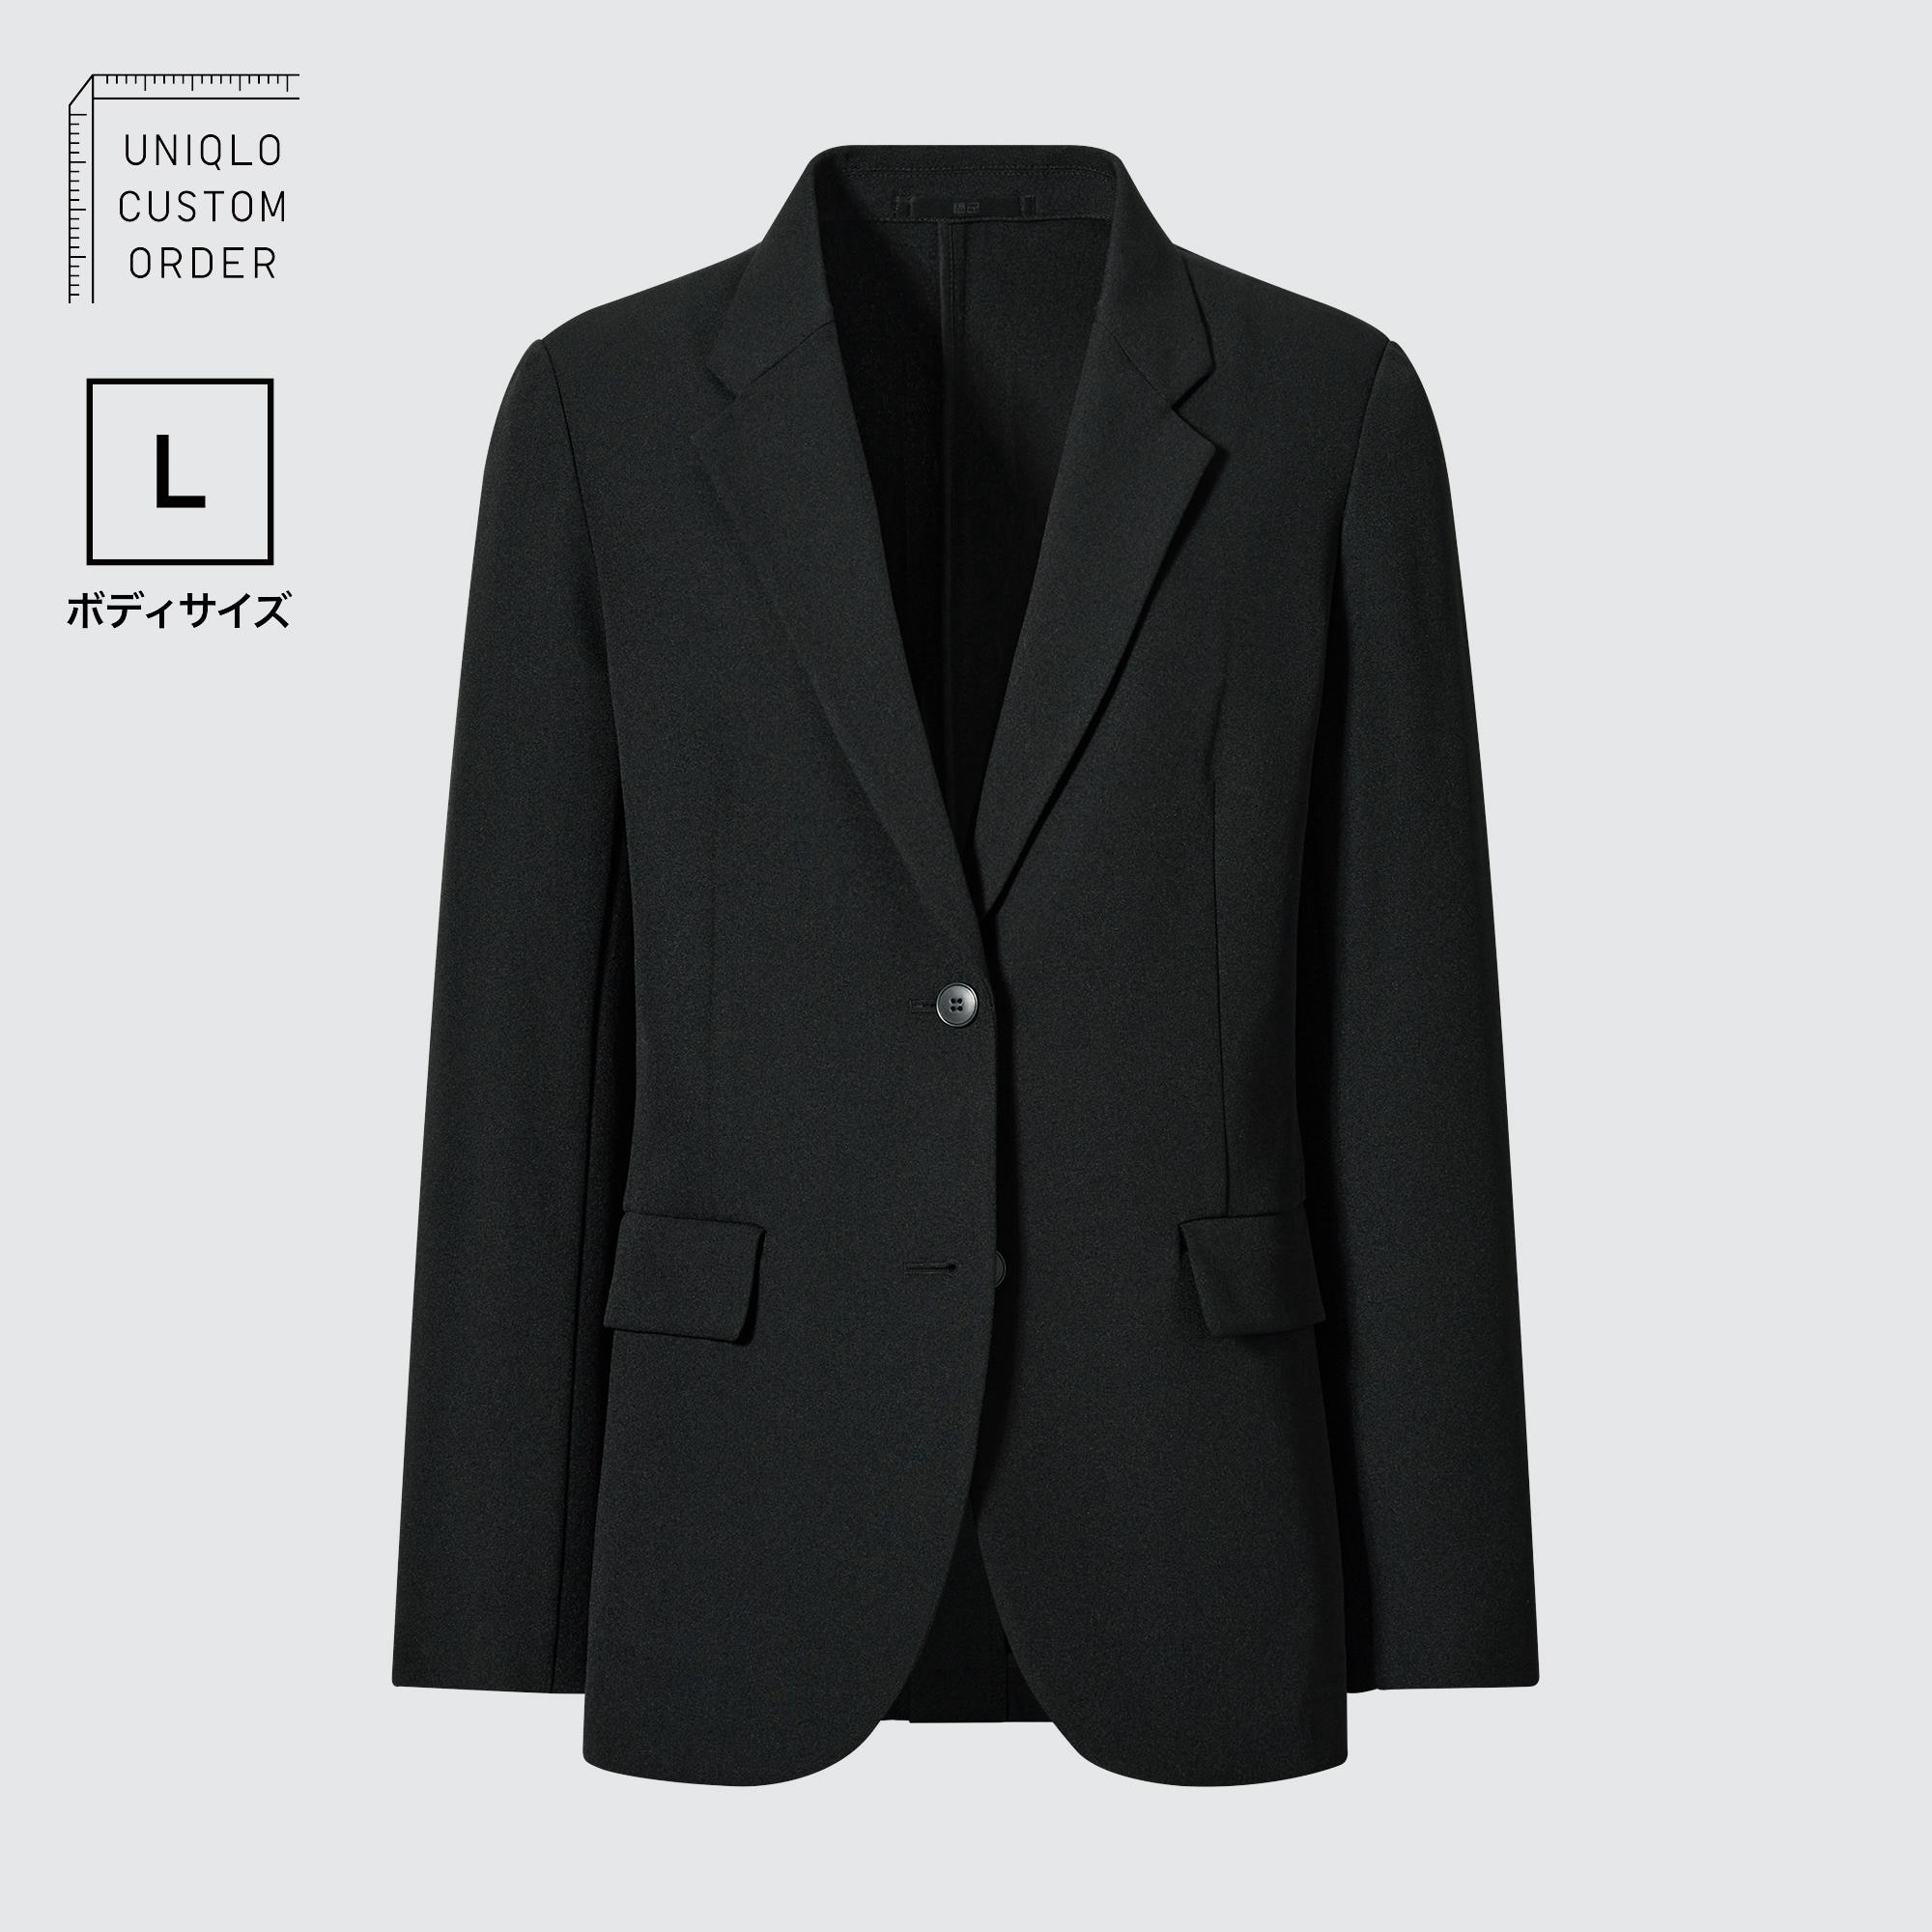 Куртка UNIQLO Кандо L, черный цена и фото